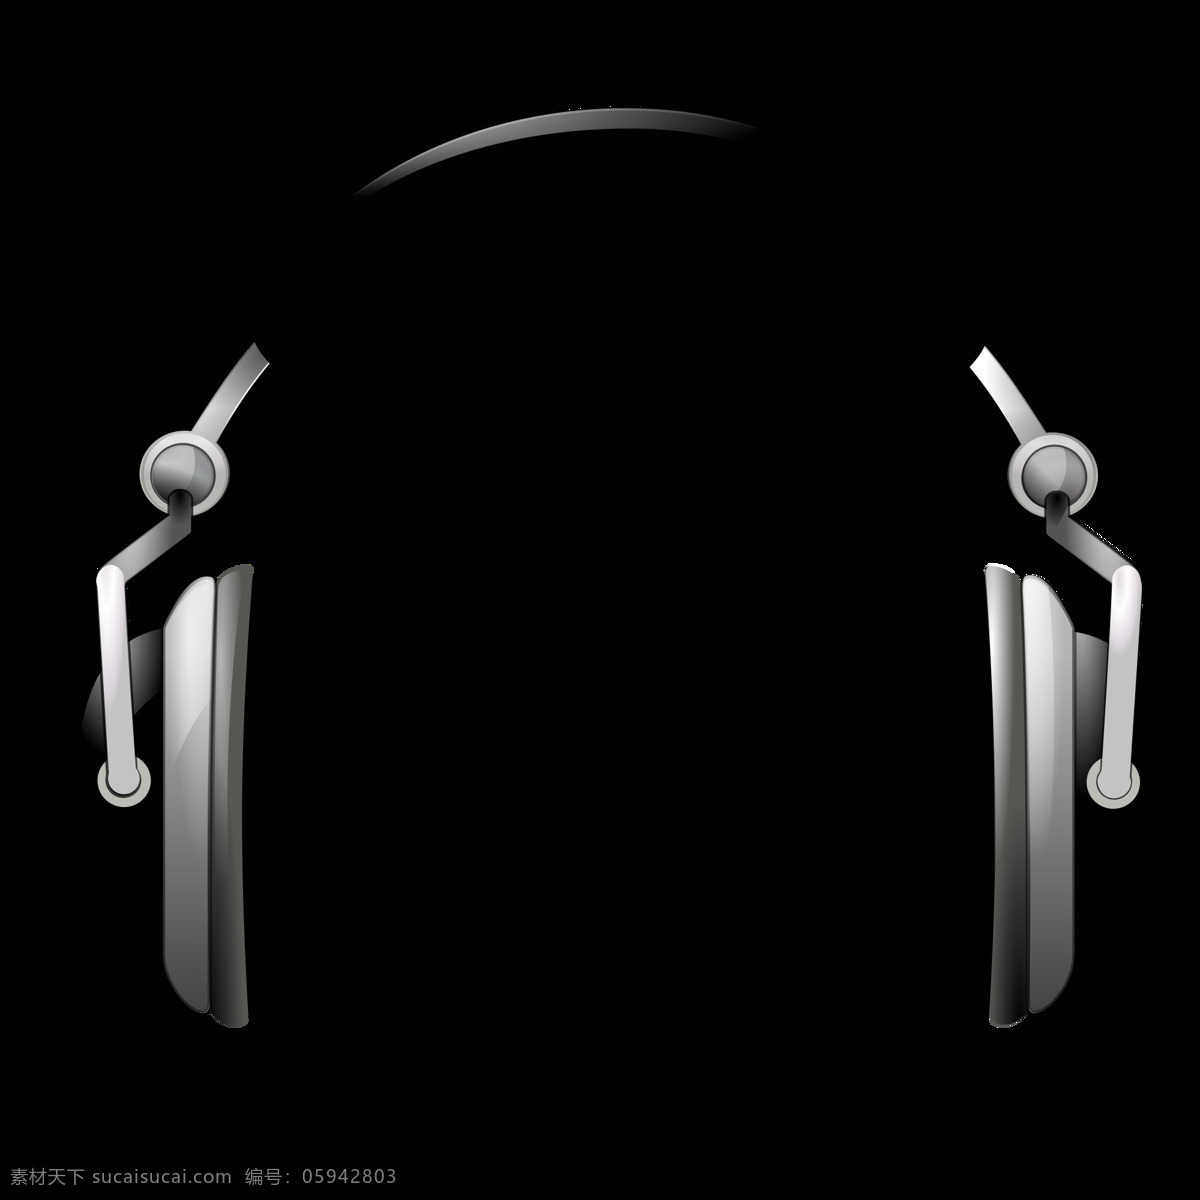 头 戴 式 耳机 三维 图 免 抠 透明 唯美 意境 耳机卡通 耳机简笔画 耳机图标 索尼耳机 头戴式耳机 耳机素材 入耳式耳机 耳机图片唯美 耳塞式耳机